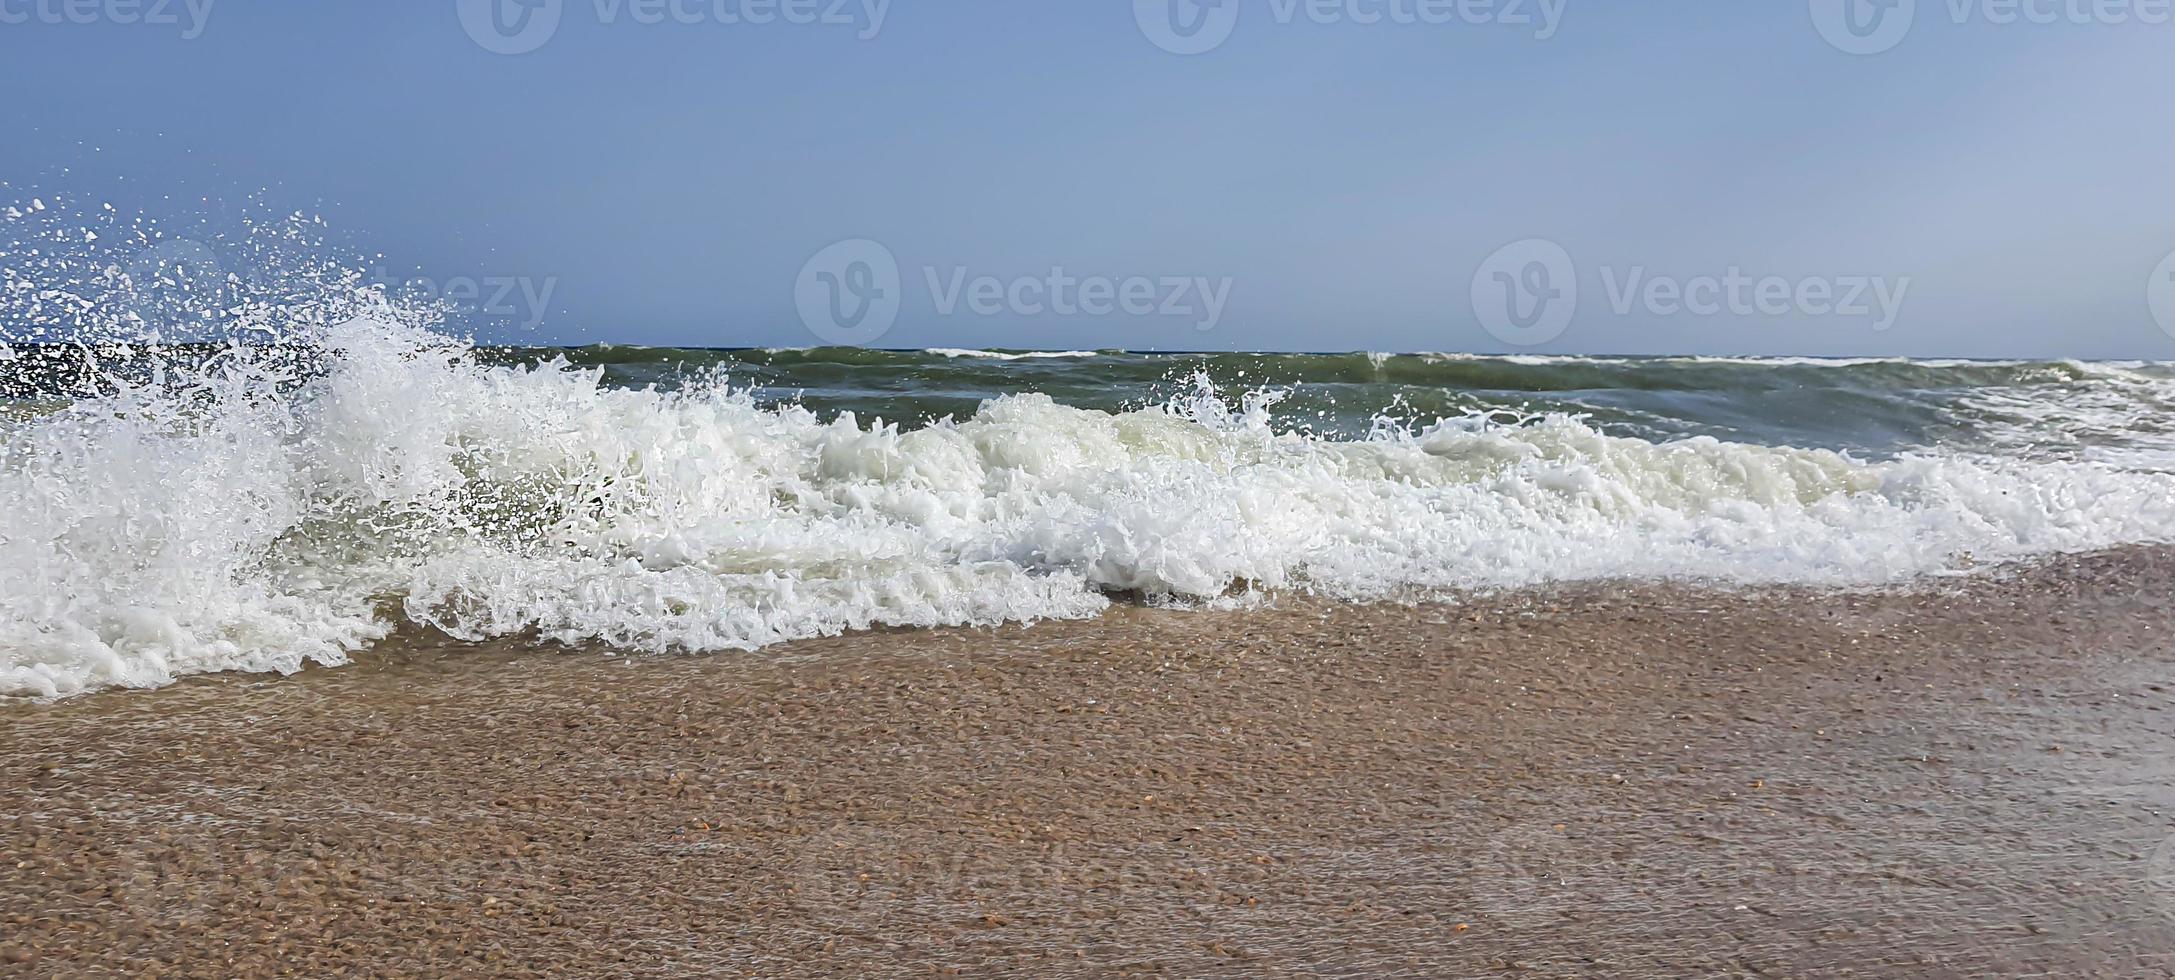 paesaggio marino. colore azzurro dell'acqua, onde spumeggianti sulla riva. foto